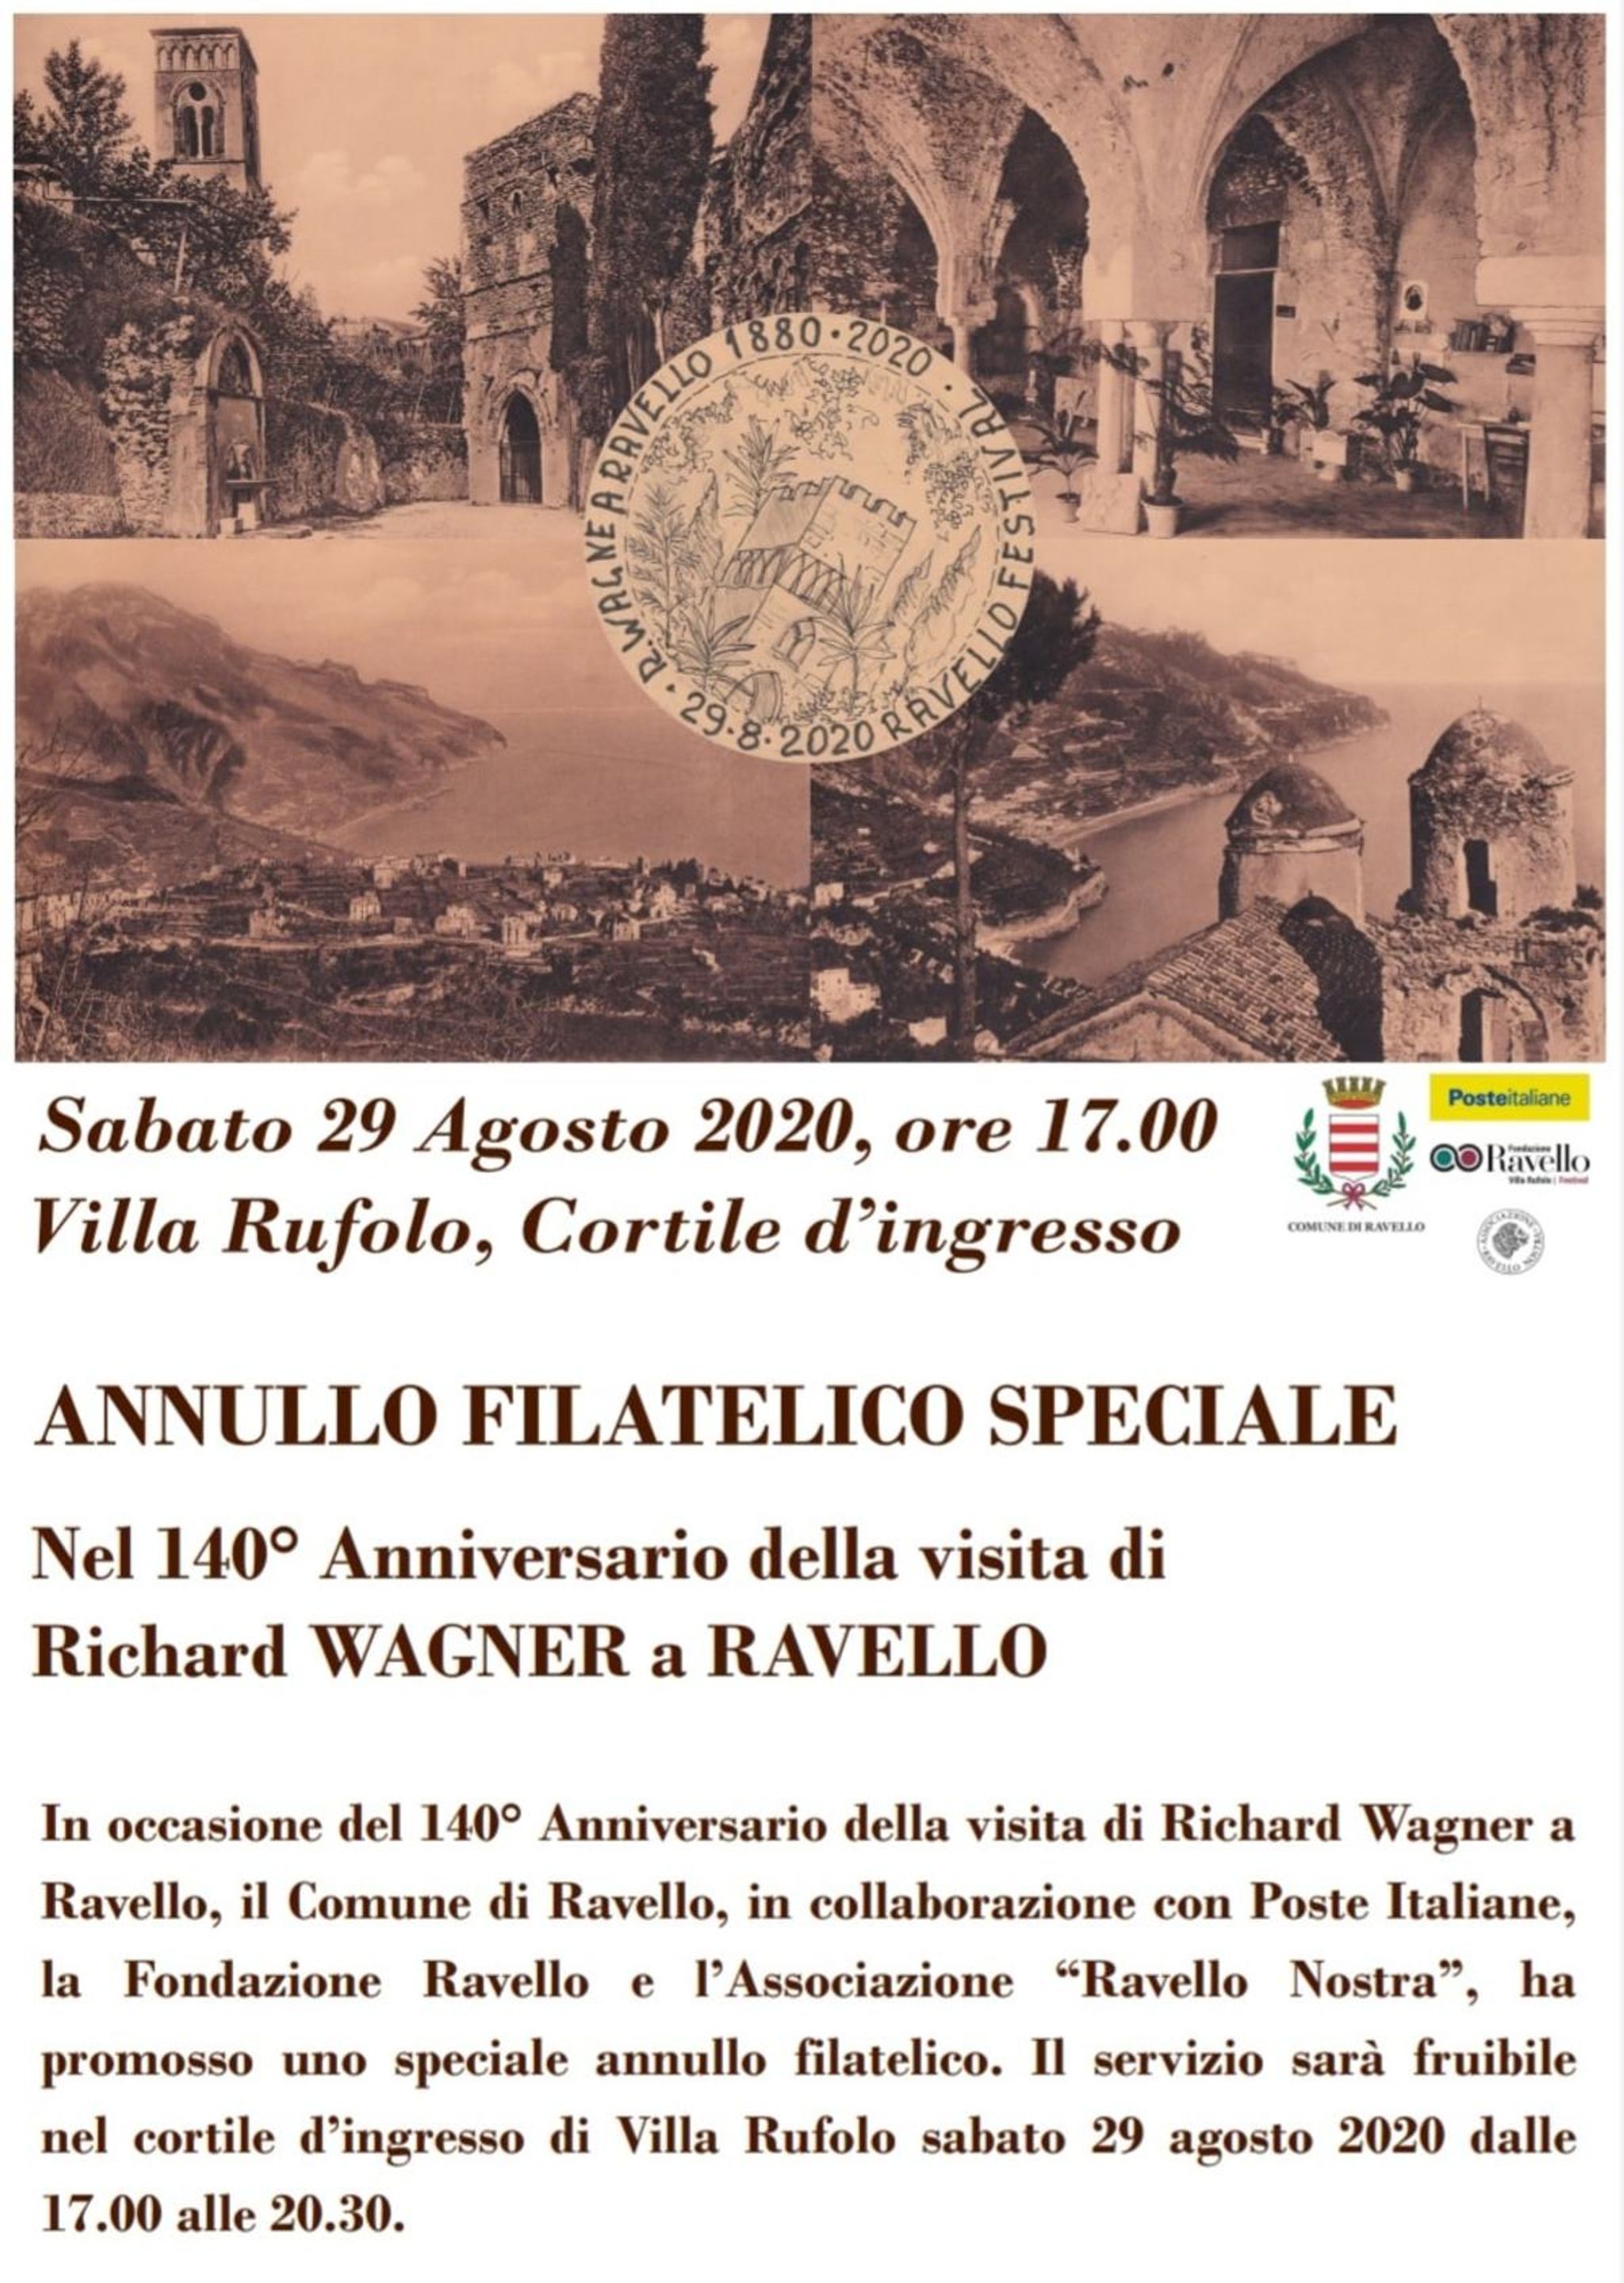 Annullo filatelico speciale: Richard Wagner a Ravello